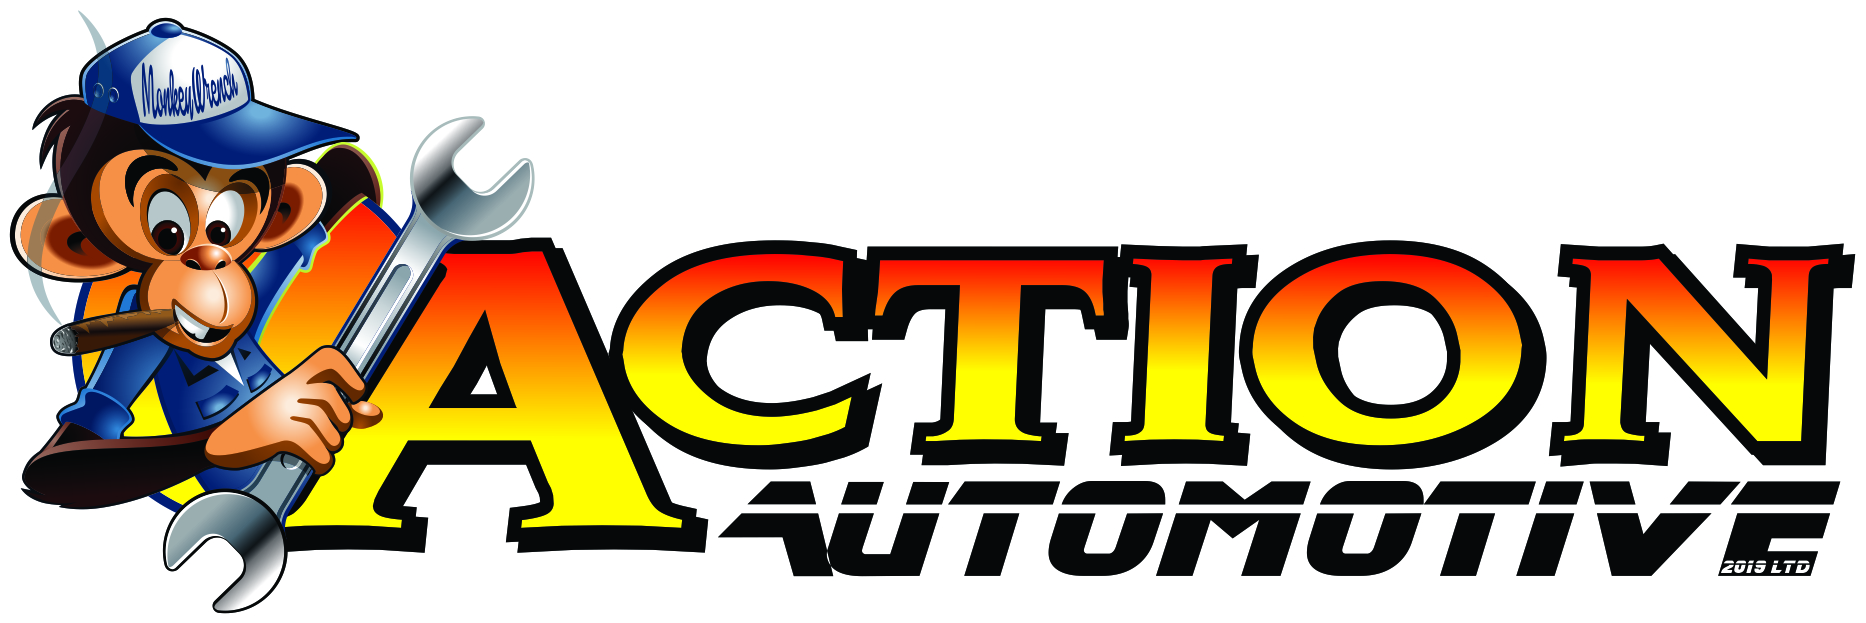 Action Automotive